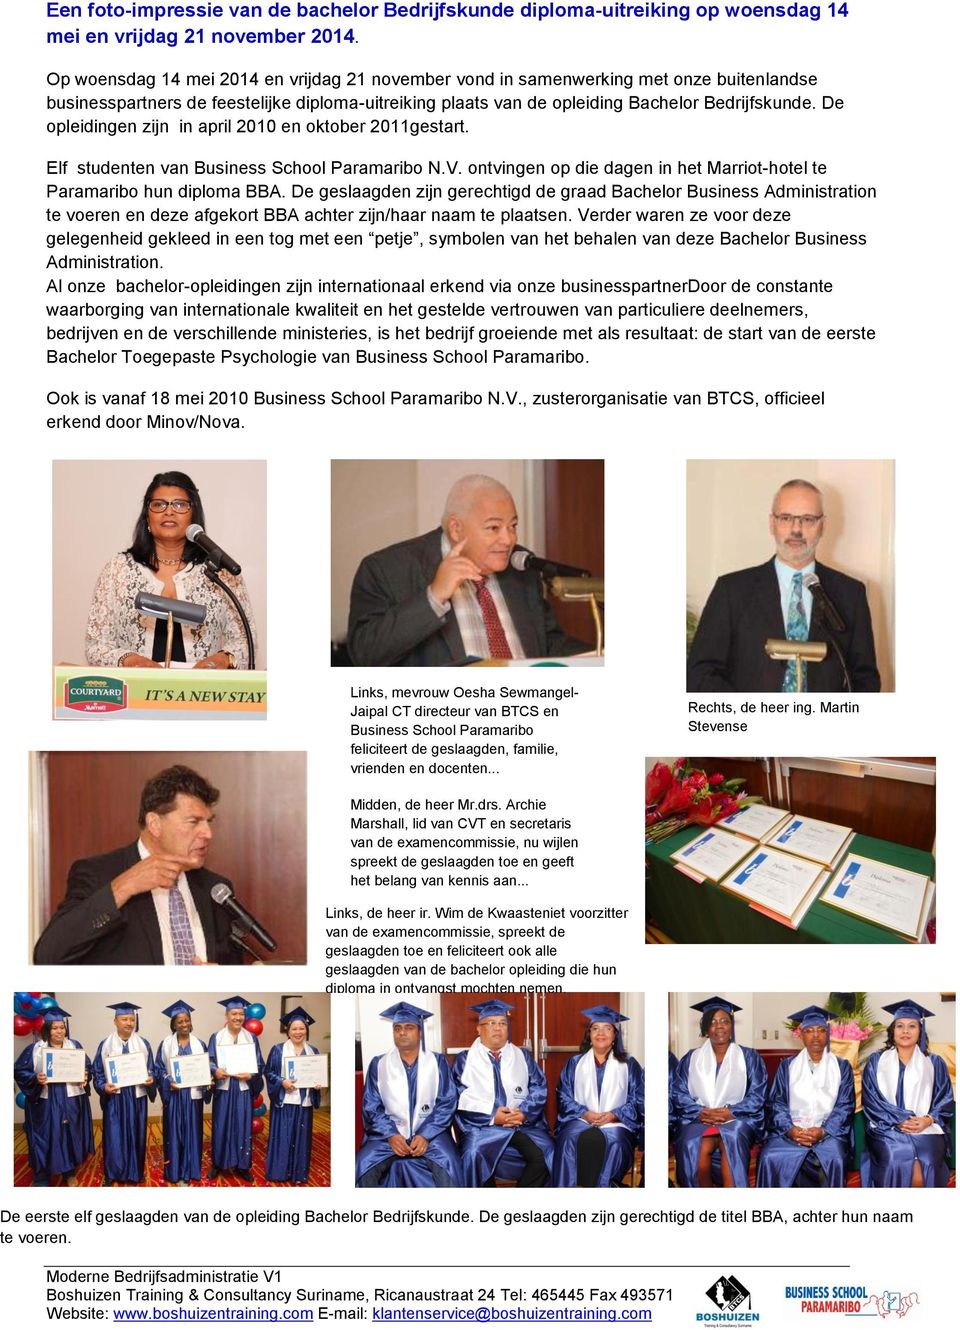 De opleidingen zijn in april 2010 en oktober 2011gestart. Elf studenten van Business School Paramaribo N.V. ontvingen op die dagen in het Marriot-hotel te Paramaribo hun diploma BBA.